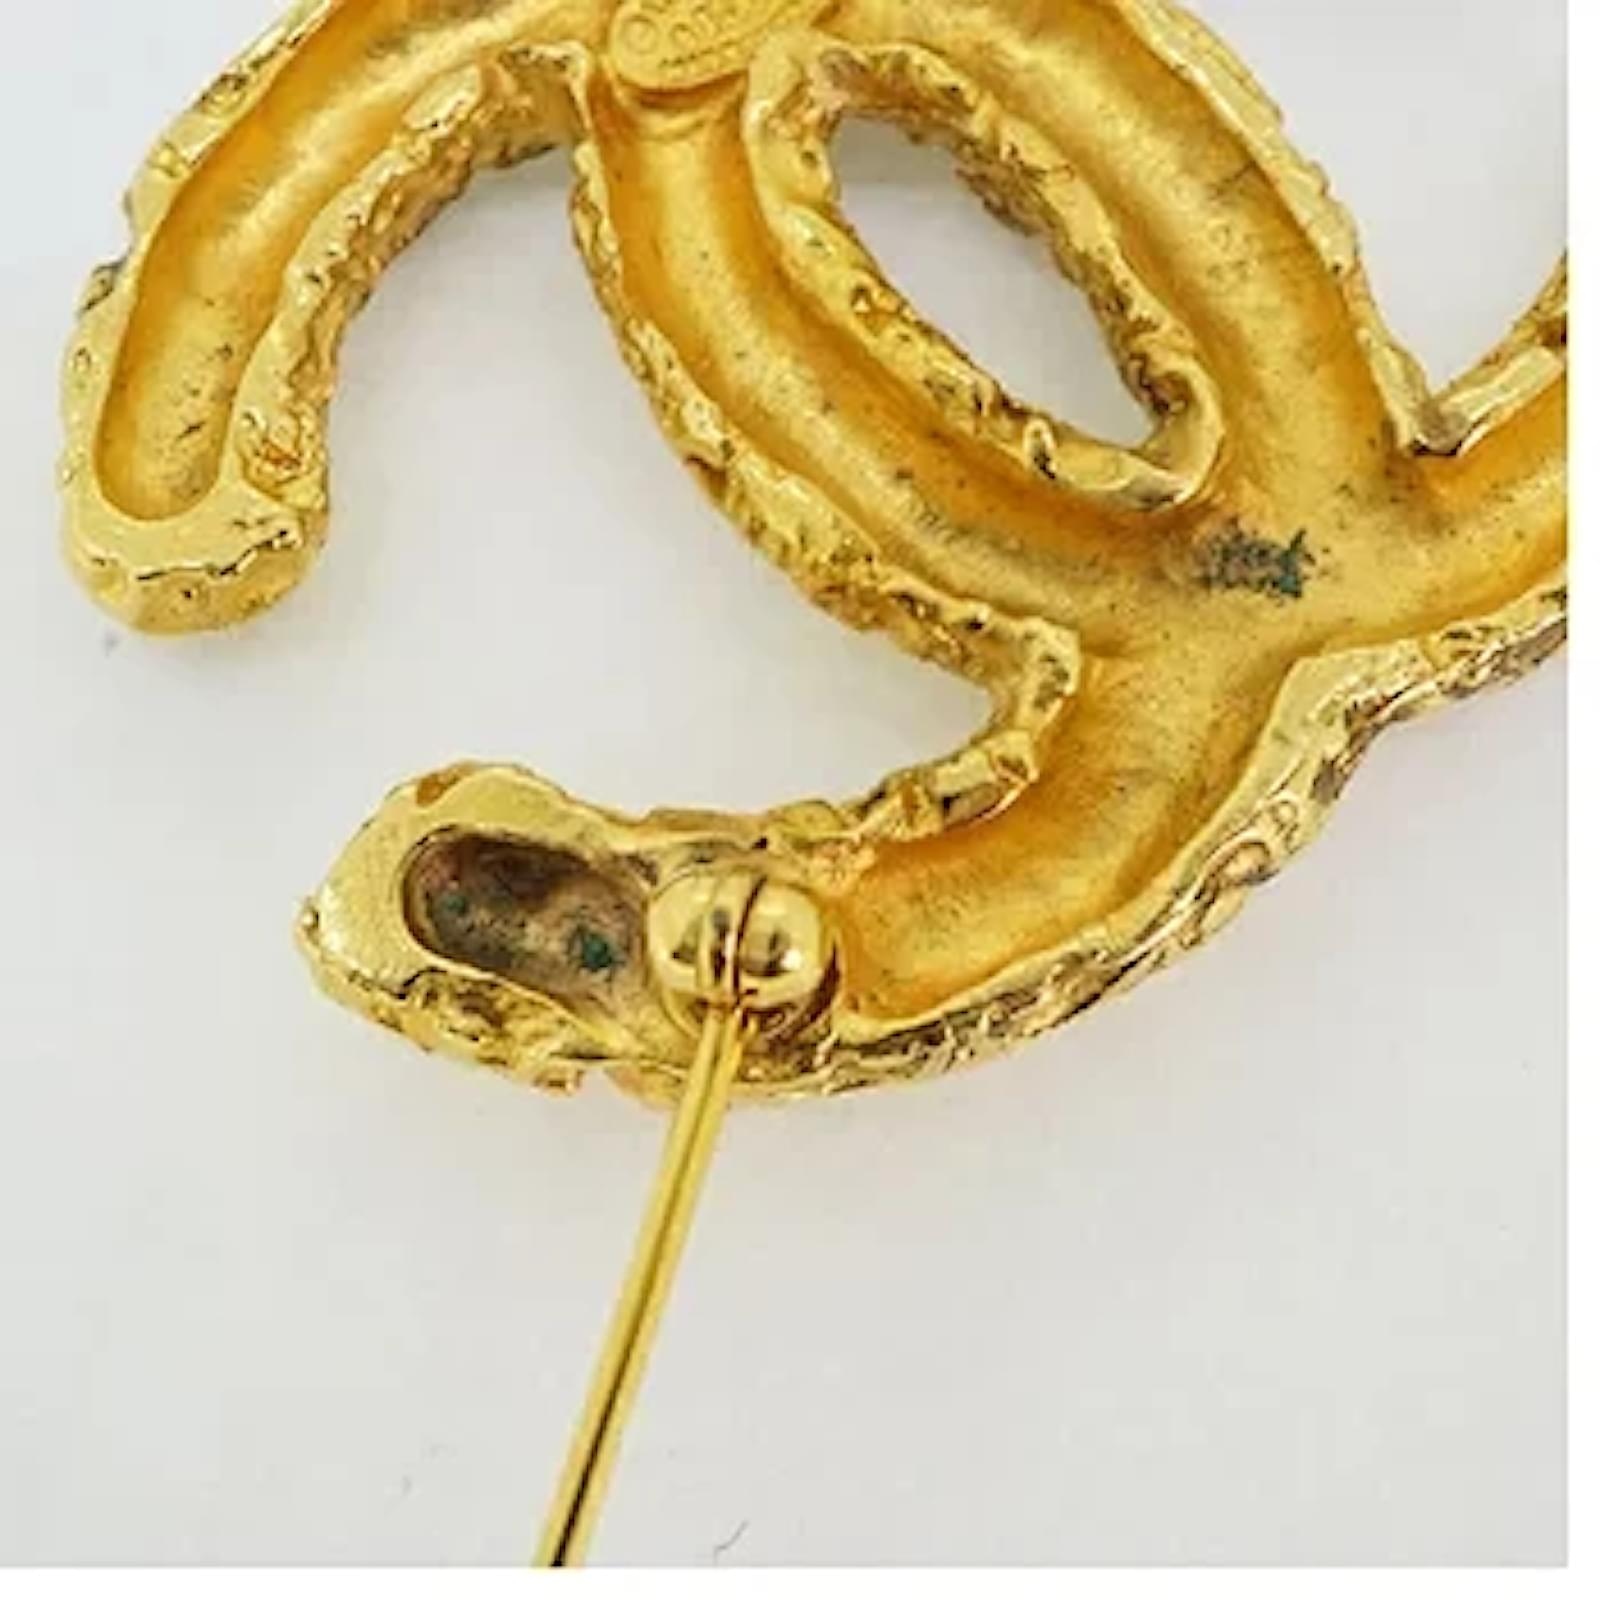 Chanel brooch in gold - Gem